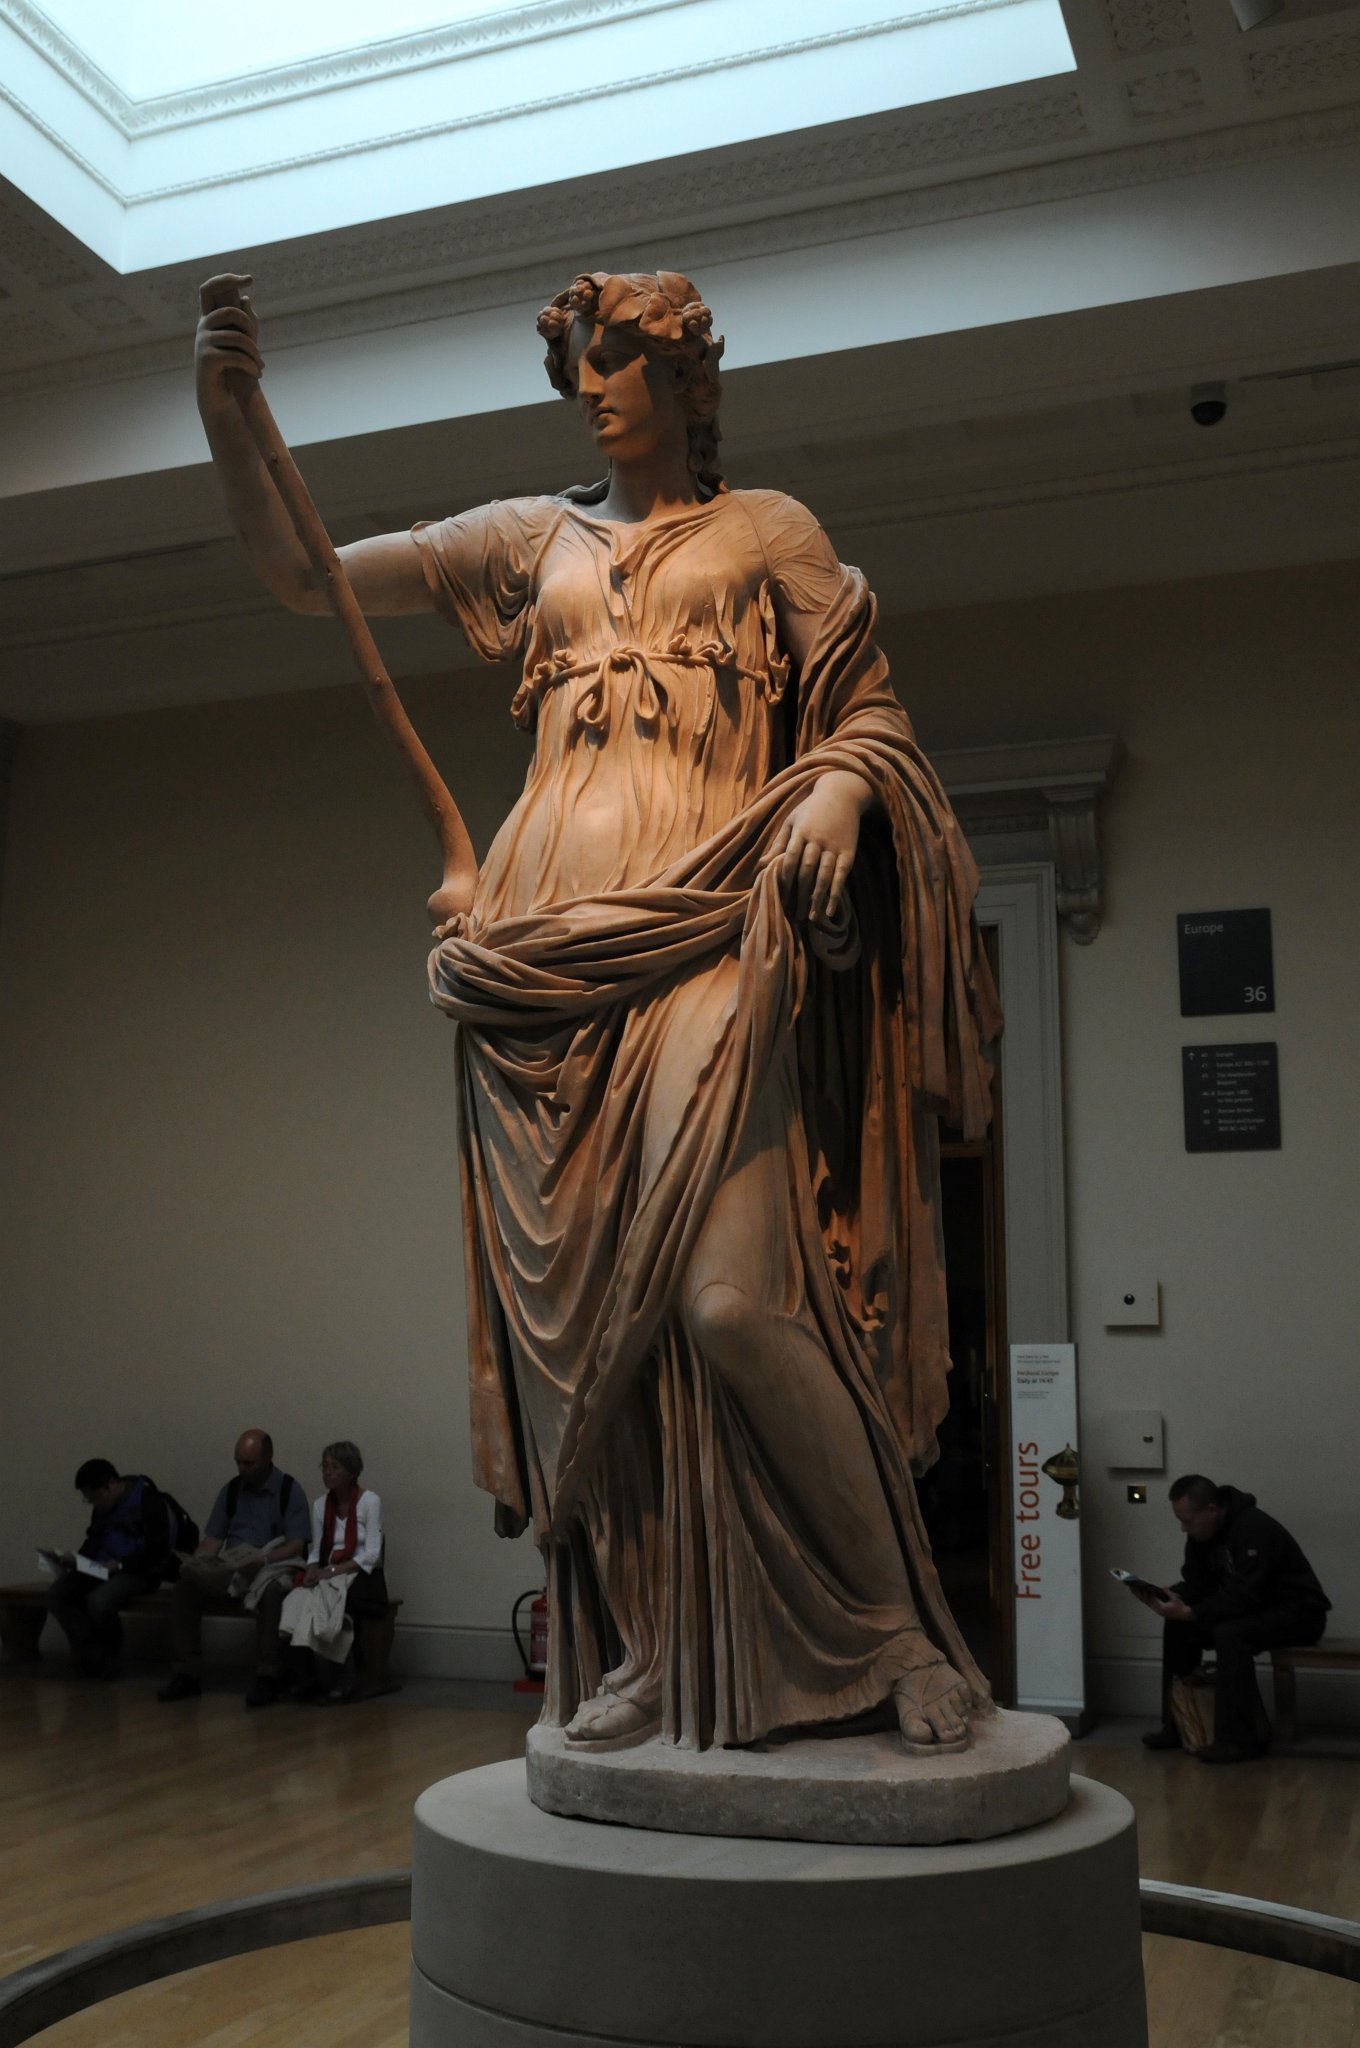 DSC_5775_2.jpg - V antické mytologii, Thalia byla jednou z devíti Múz. Múzy byly společníce boha Apollóna a věnovaly se umění a vědám. Ačkoli Thalia byl spojována s komedií, Římští básníci ji popisují jjako půvabnou a něžnou. Tato umně vyřezávaná mramorová socha krásně vystihuje jejího ducha.Věnec z břečťanu a pastýřská hůl symbolizují Thalii  v souvislosti s krajinou, ze které pochází komické vystoupení. Její těžký plášť ji sklouzl z ramen, odhaluje tenčí nedostatečné oblečení, který zvýrazňuje její svůdné ženské tělo.Socha byla objevena v roce 1776 britským malíř Gavinem Hamiltonem. S řadou dalších soch ve starobylé budově lázní přístavního města Říma, Ostia. V souladu s praxí v té době, byla socha odborně zrestaurována a pak ji získal přední britský sběratel, Charles Townley, pro  muzeum v Londýně.